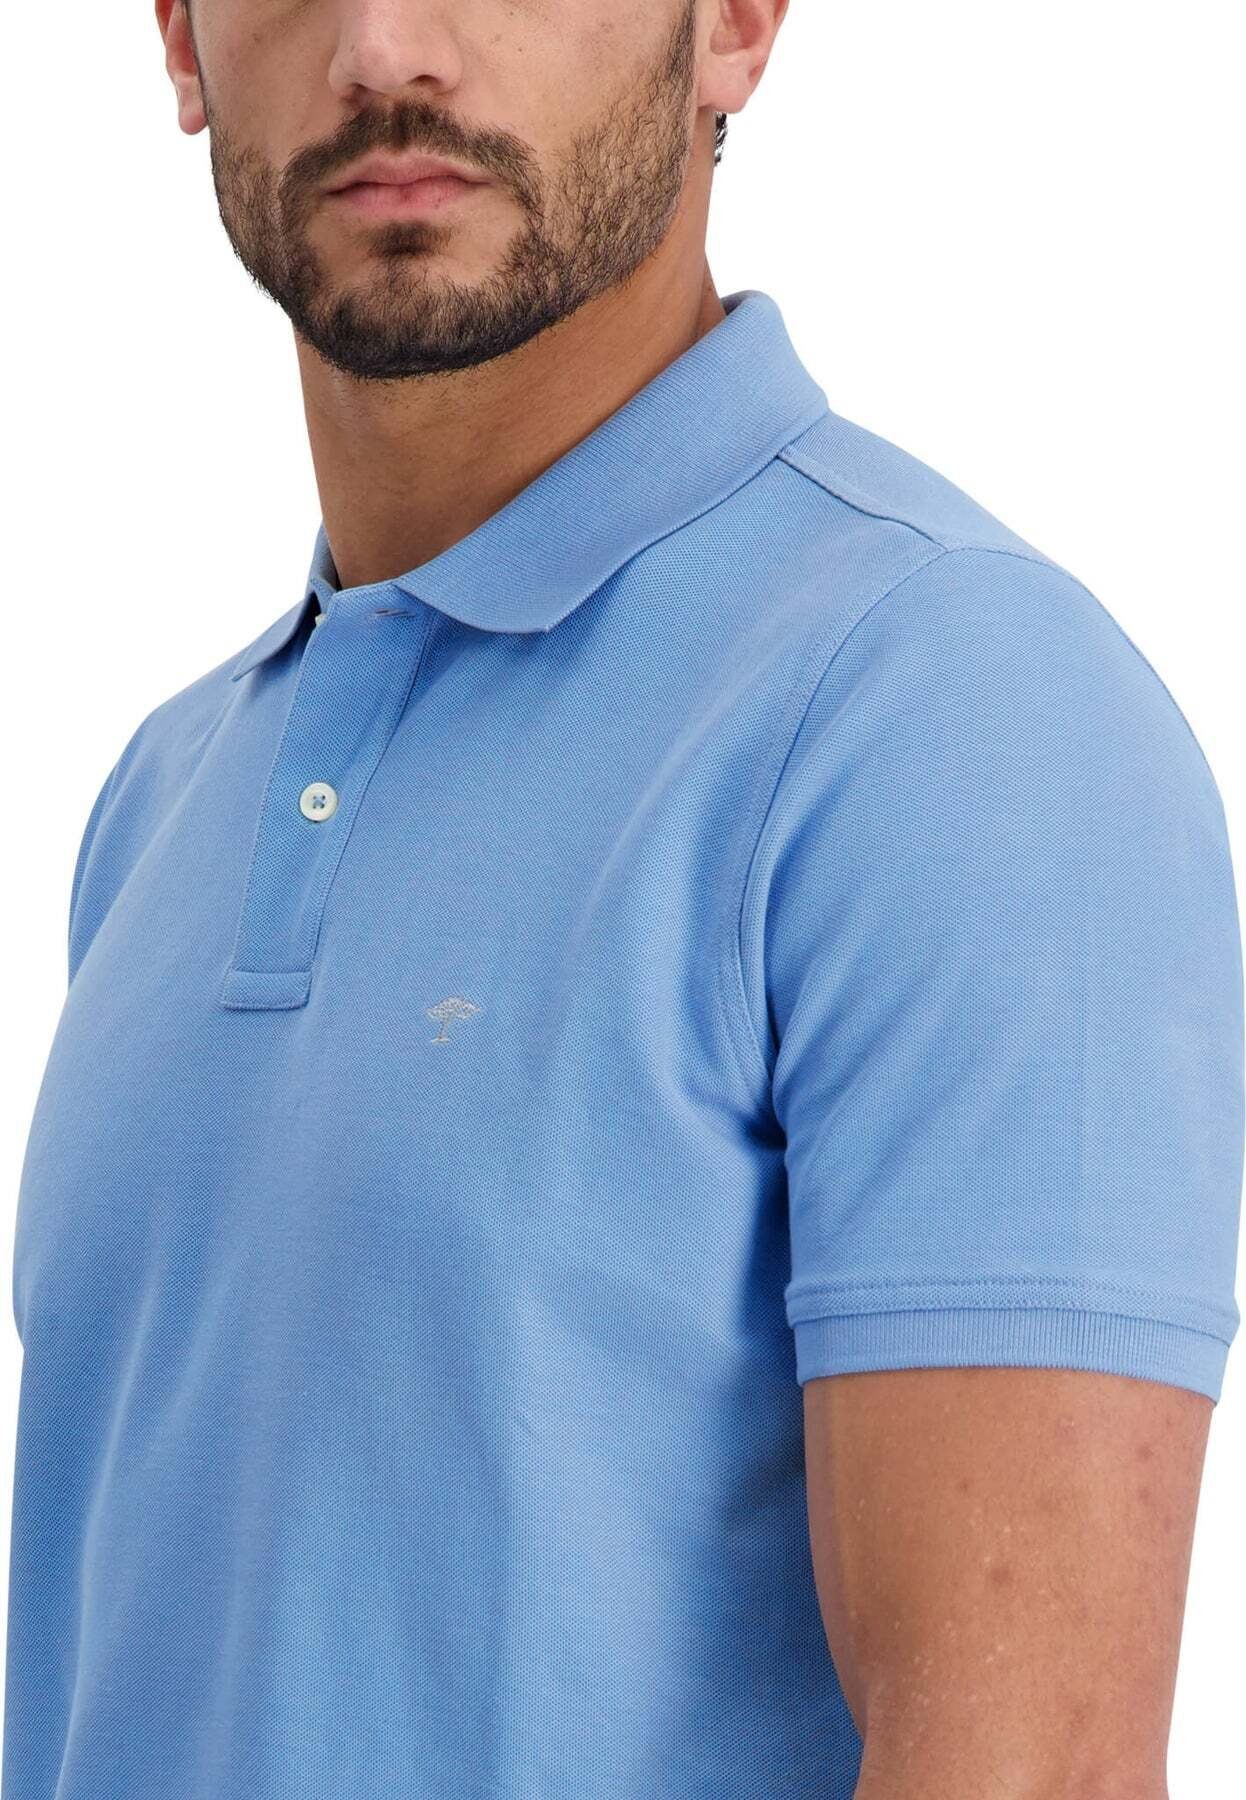 Poloshirt Kurzarmshirt Polokragen Poloshirt mit FYNCH-HATTON blau